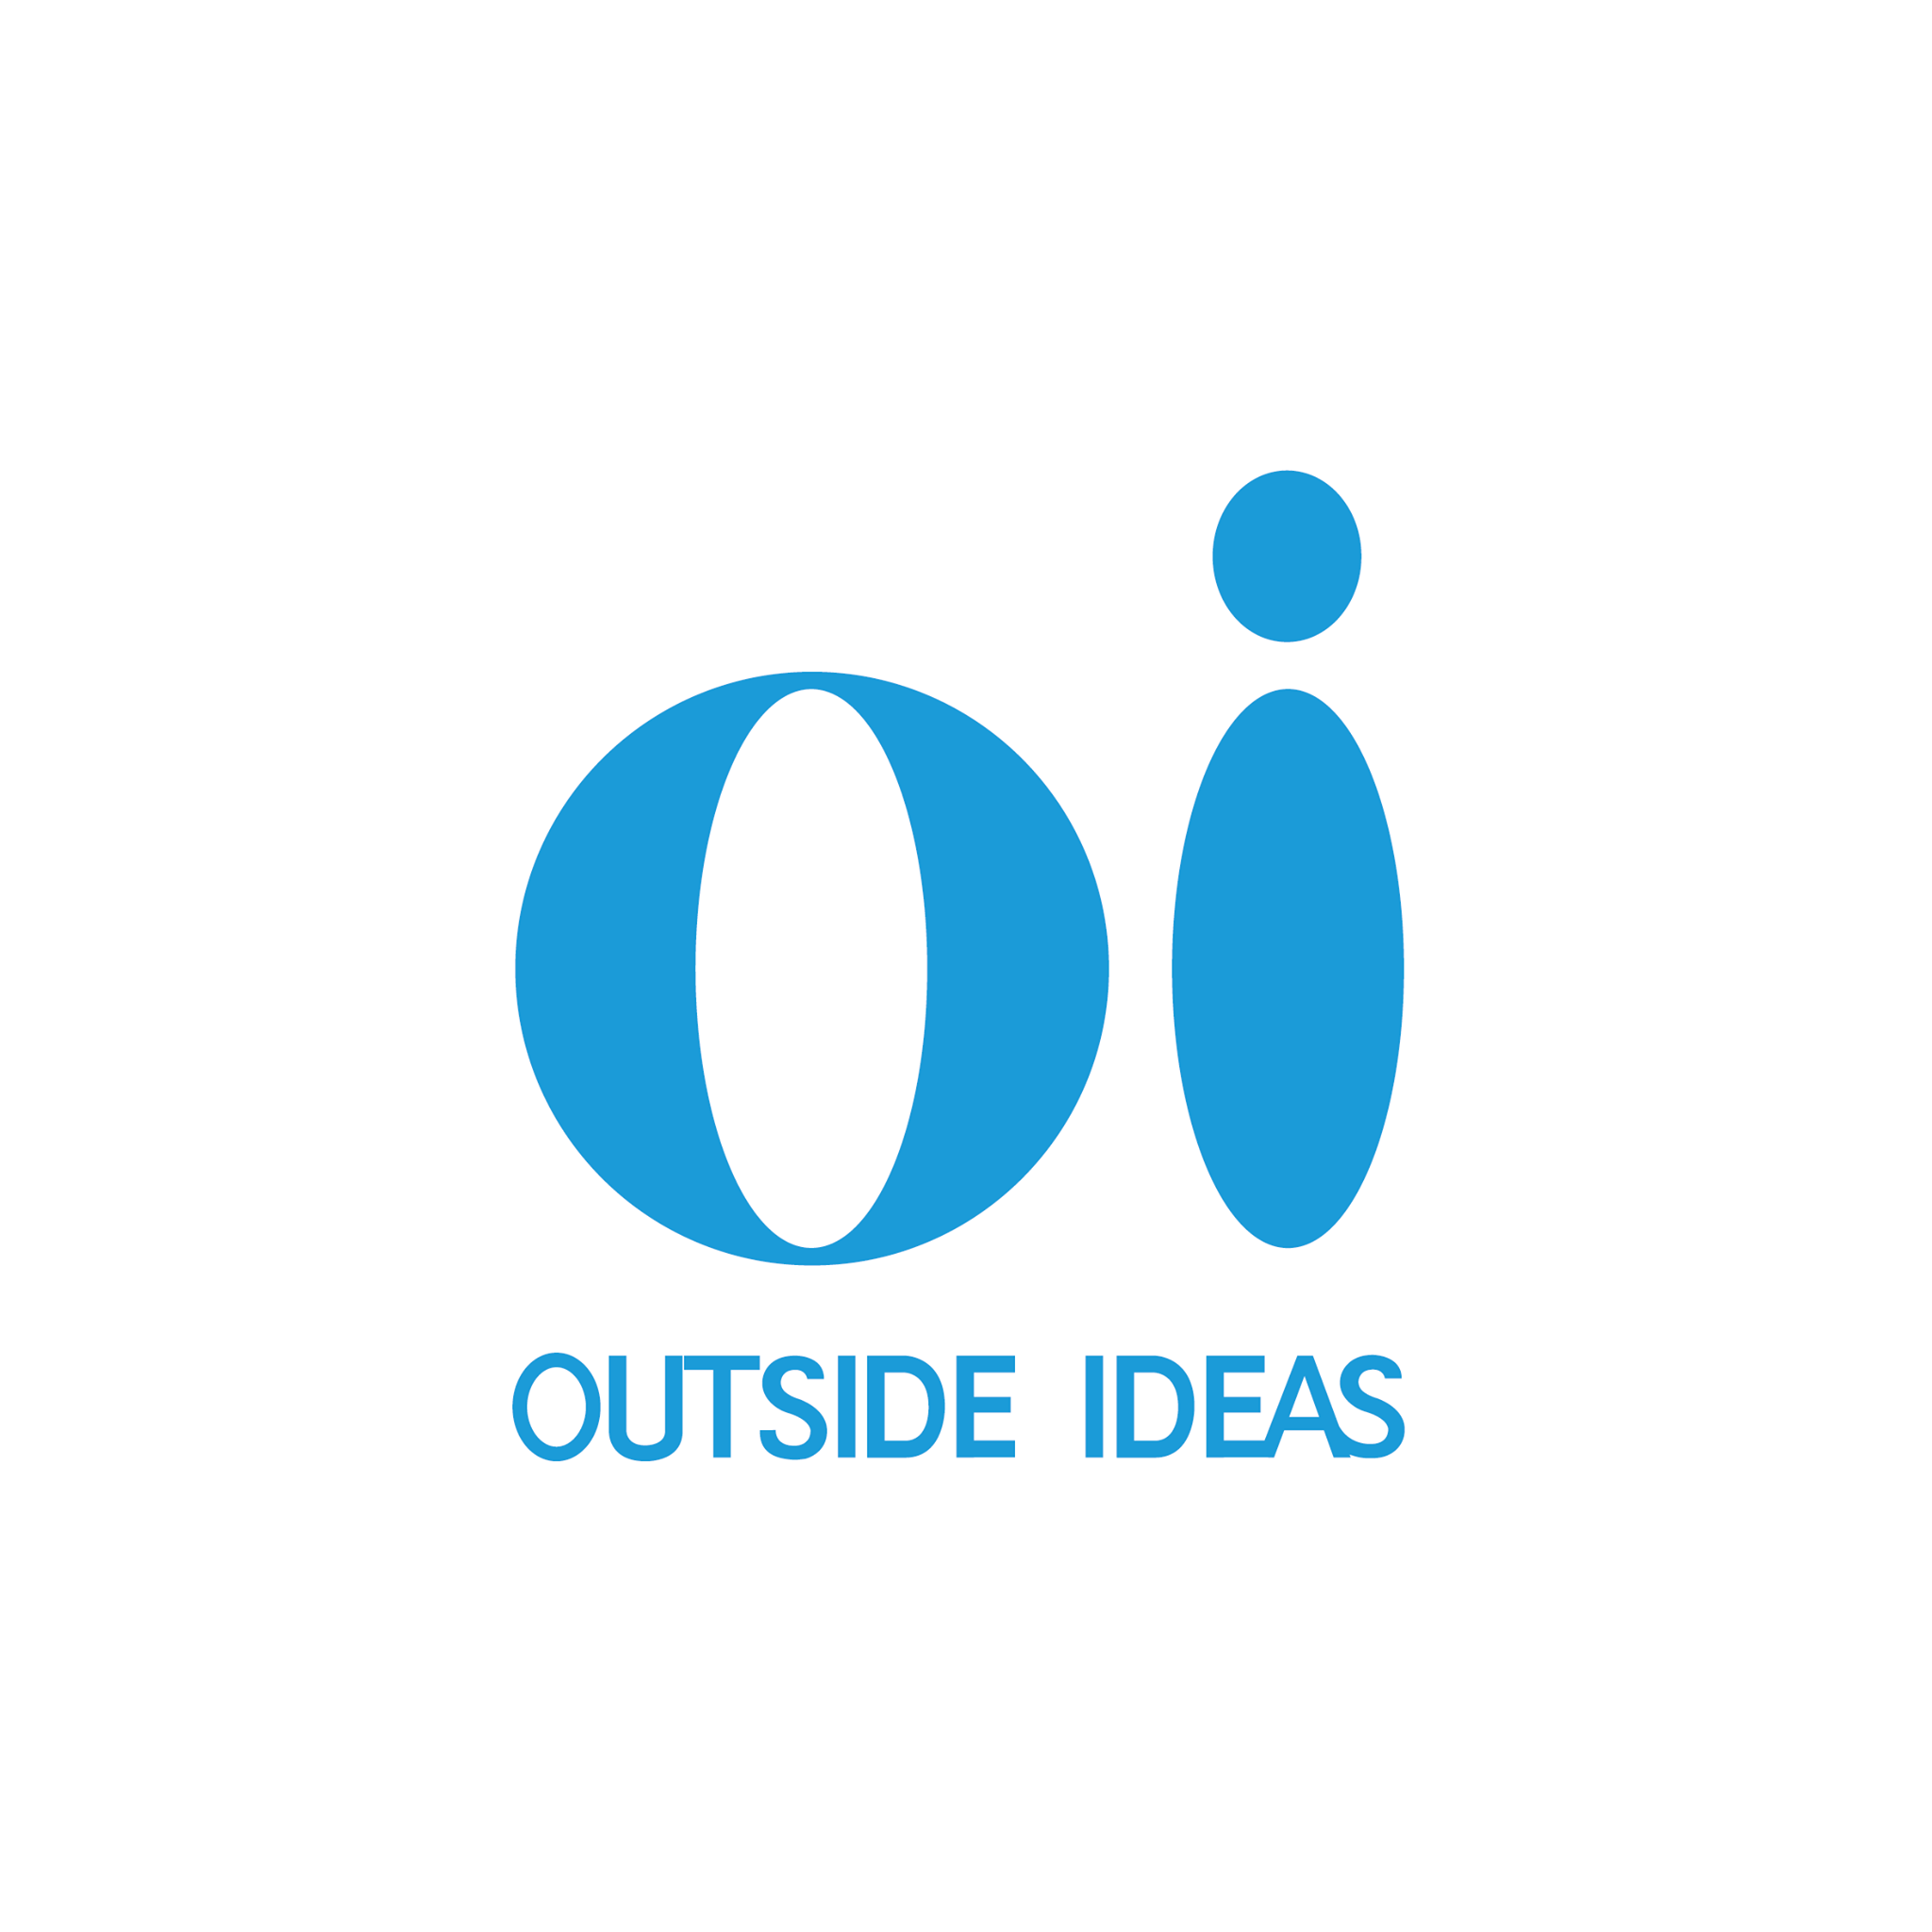 Outside ideas